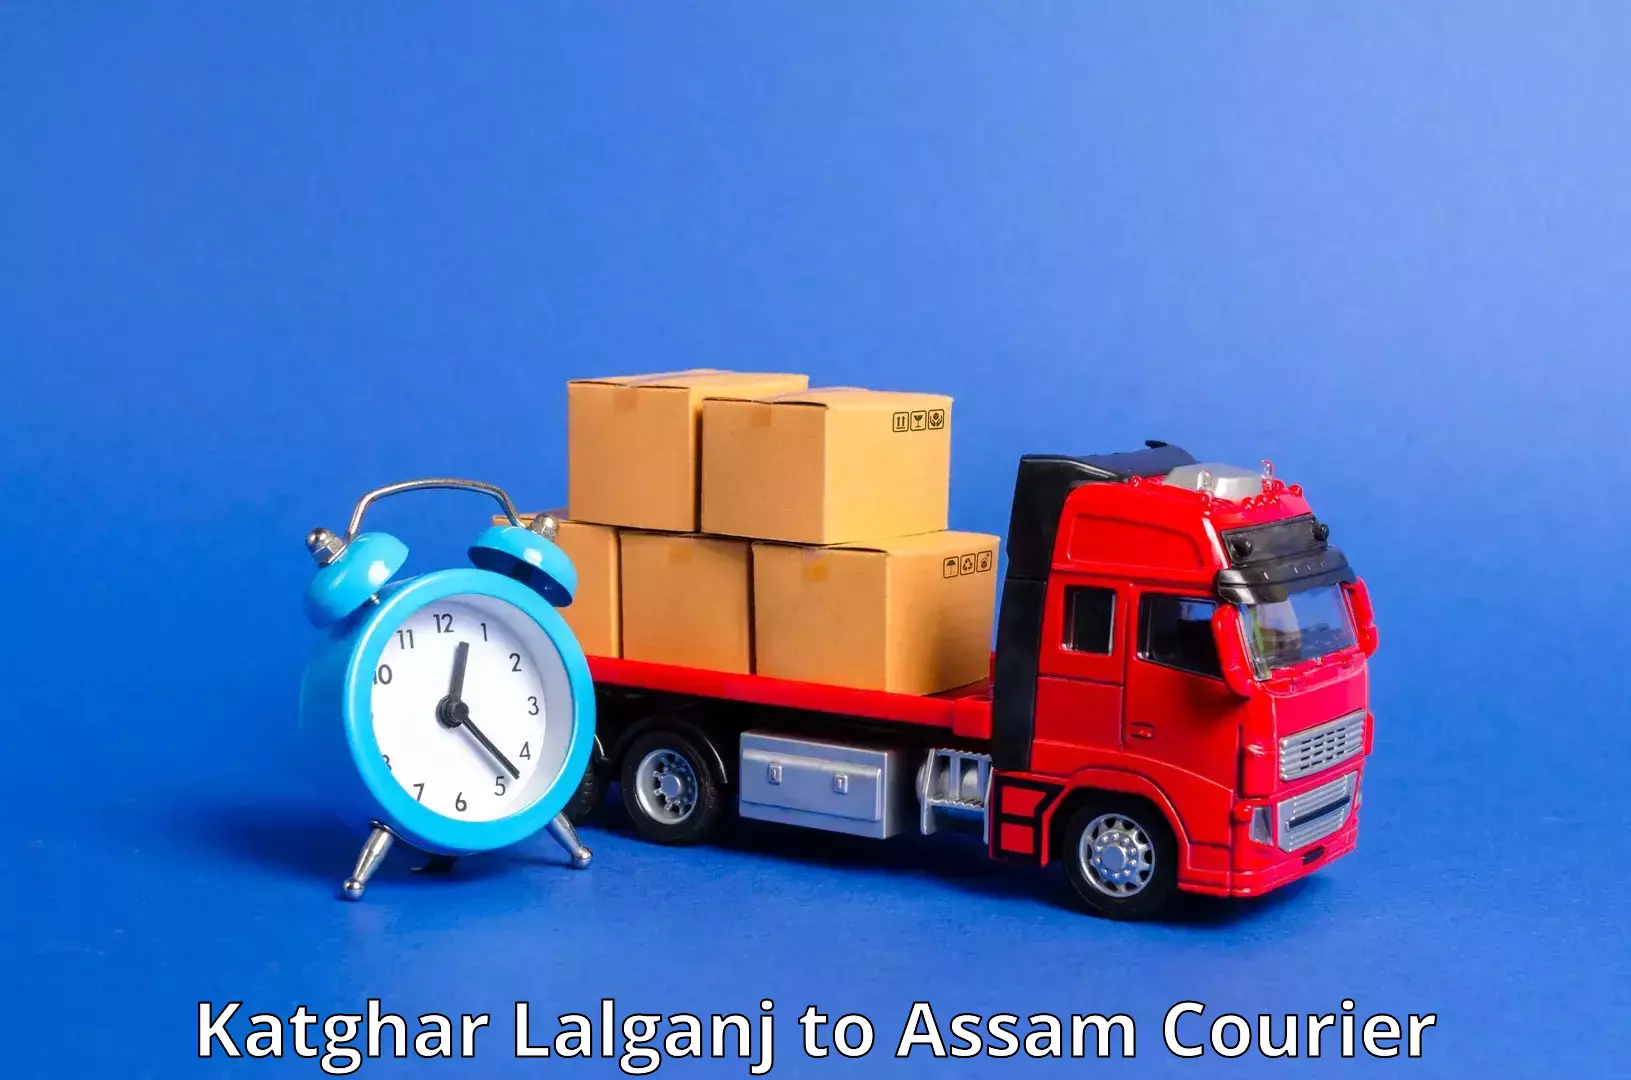 Punctual parcel services Katghar Lalganj to Udharbond